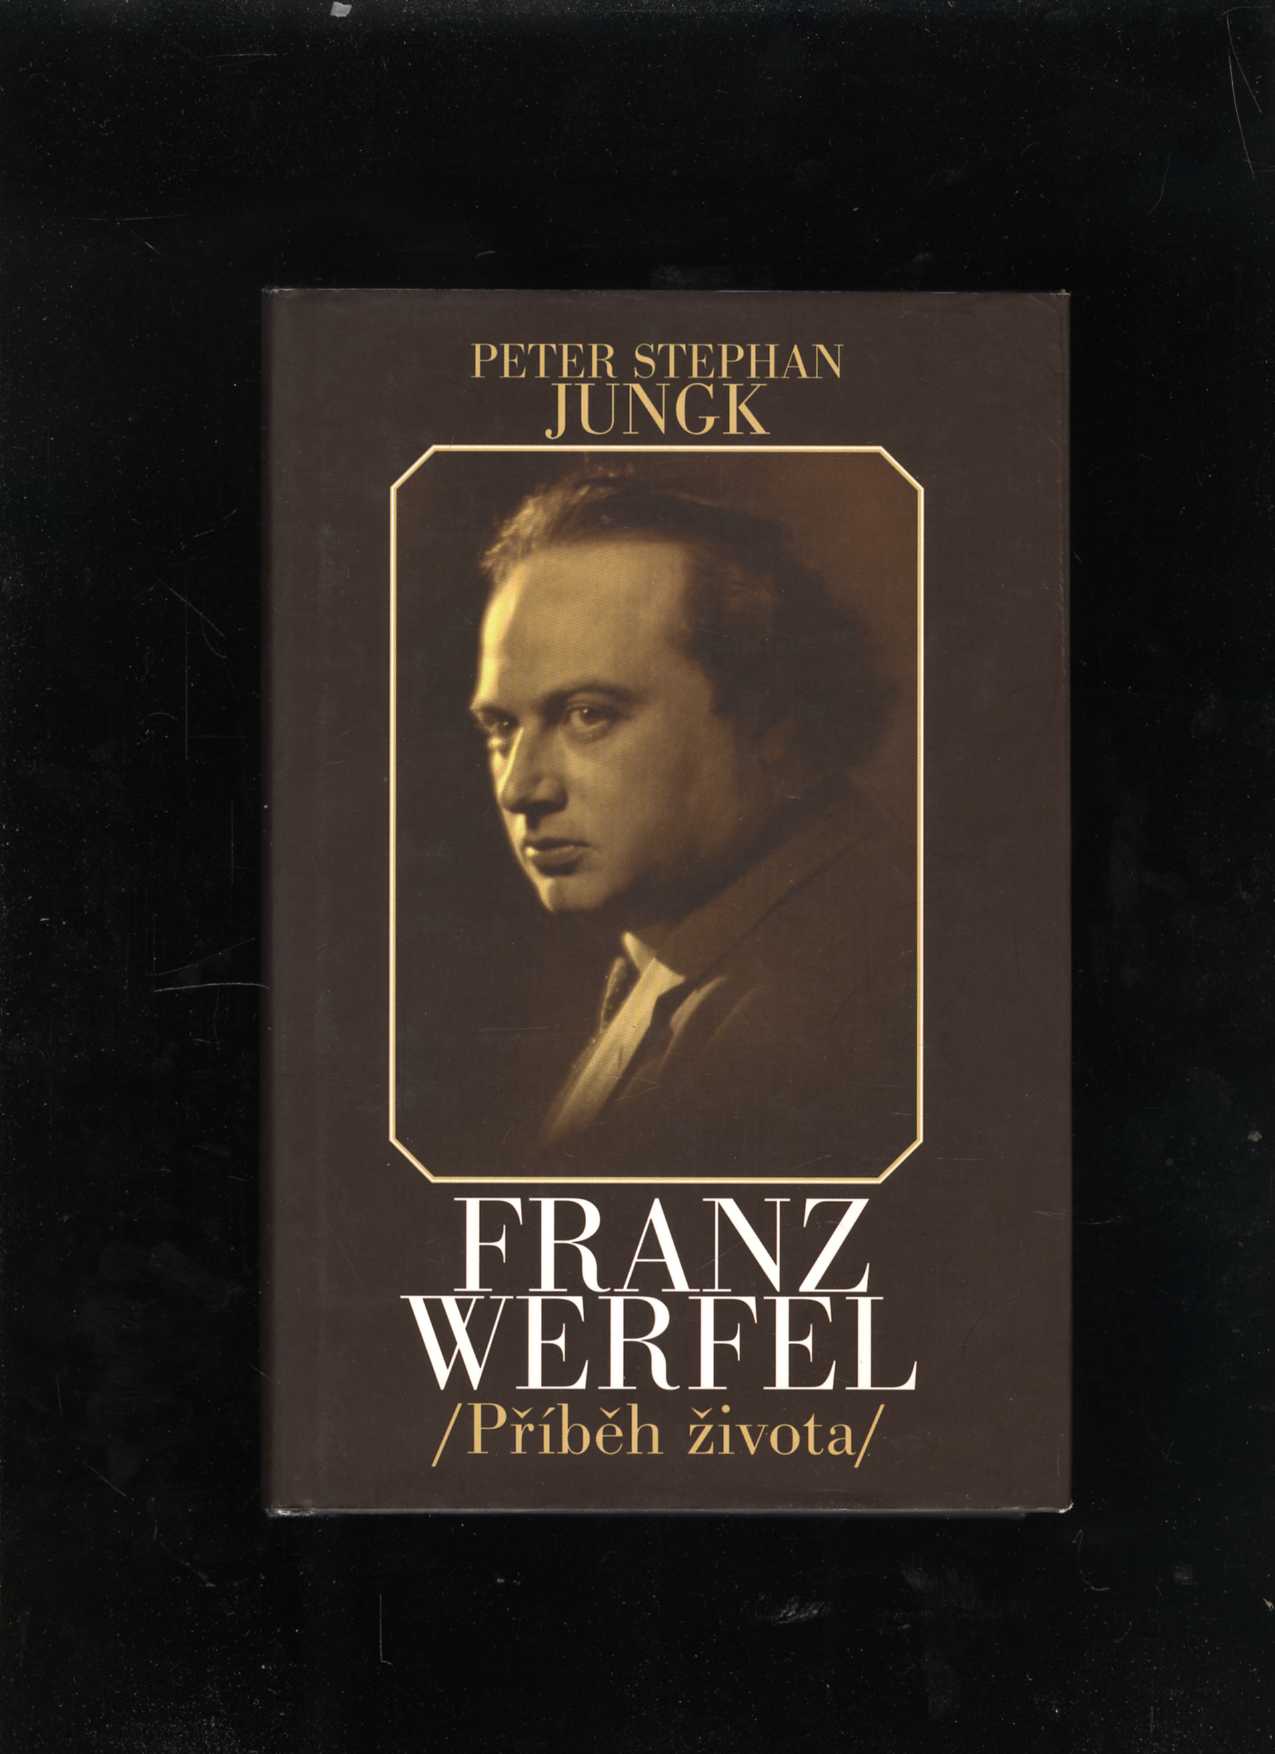 Franz Werfel - Příběh života (Peter Stephan Jungk)